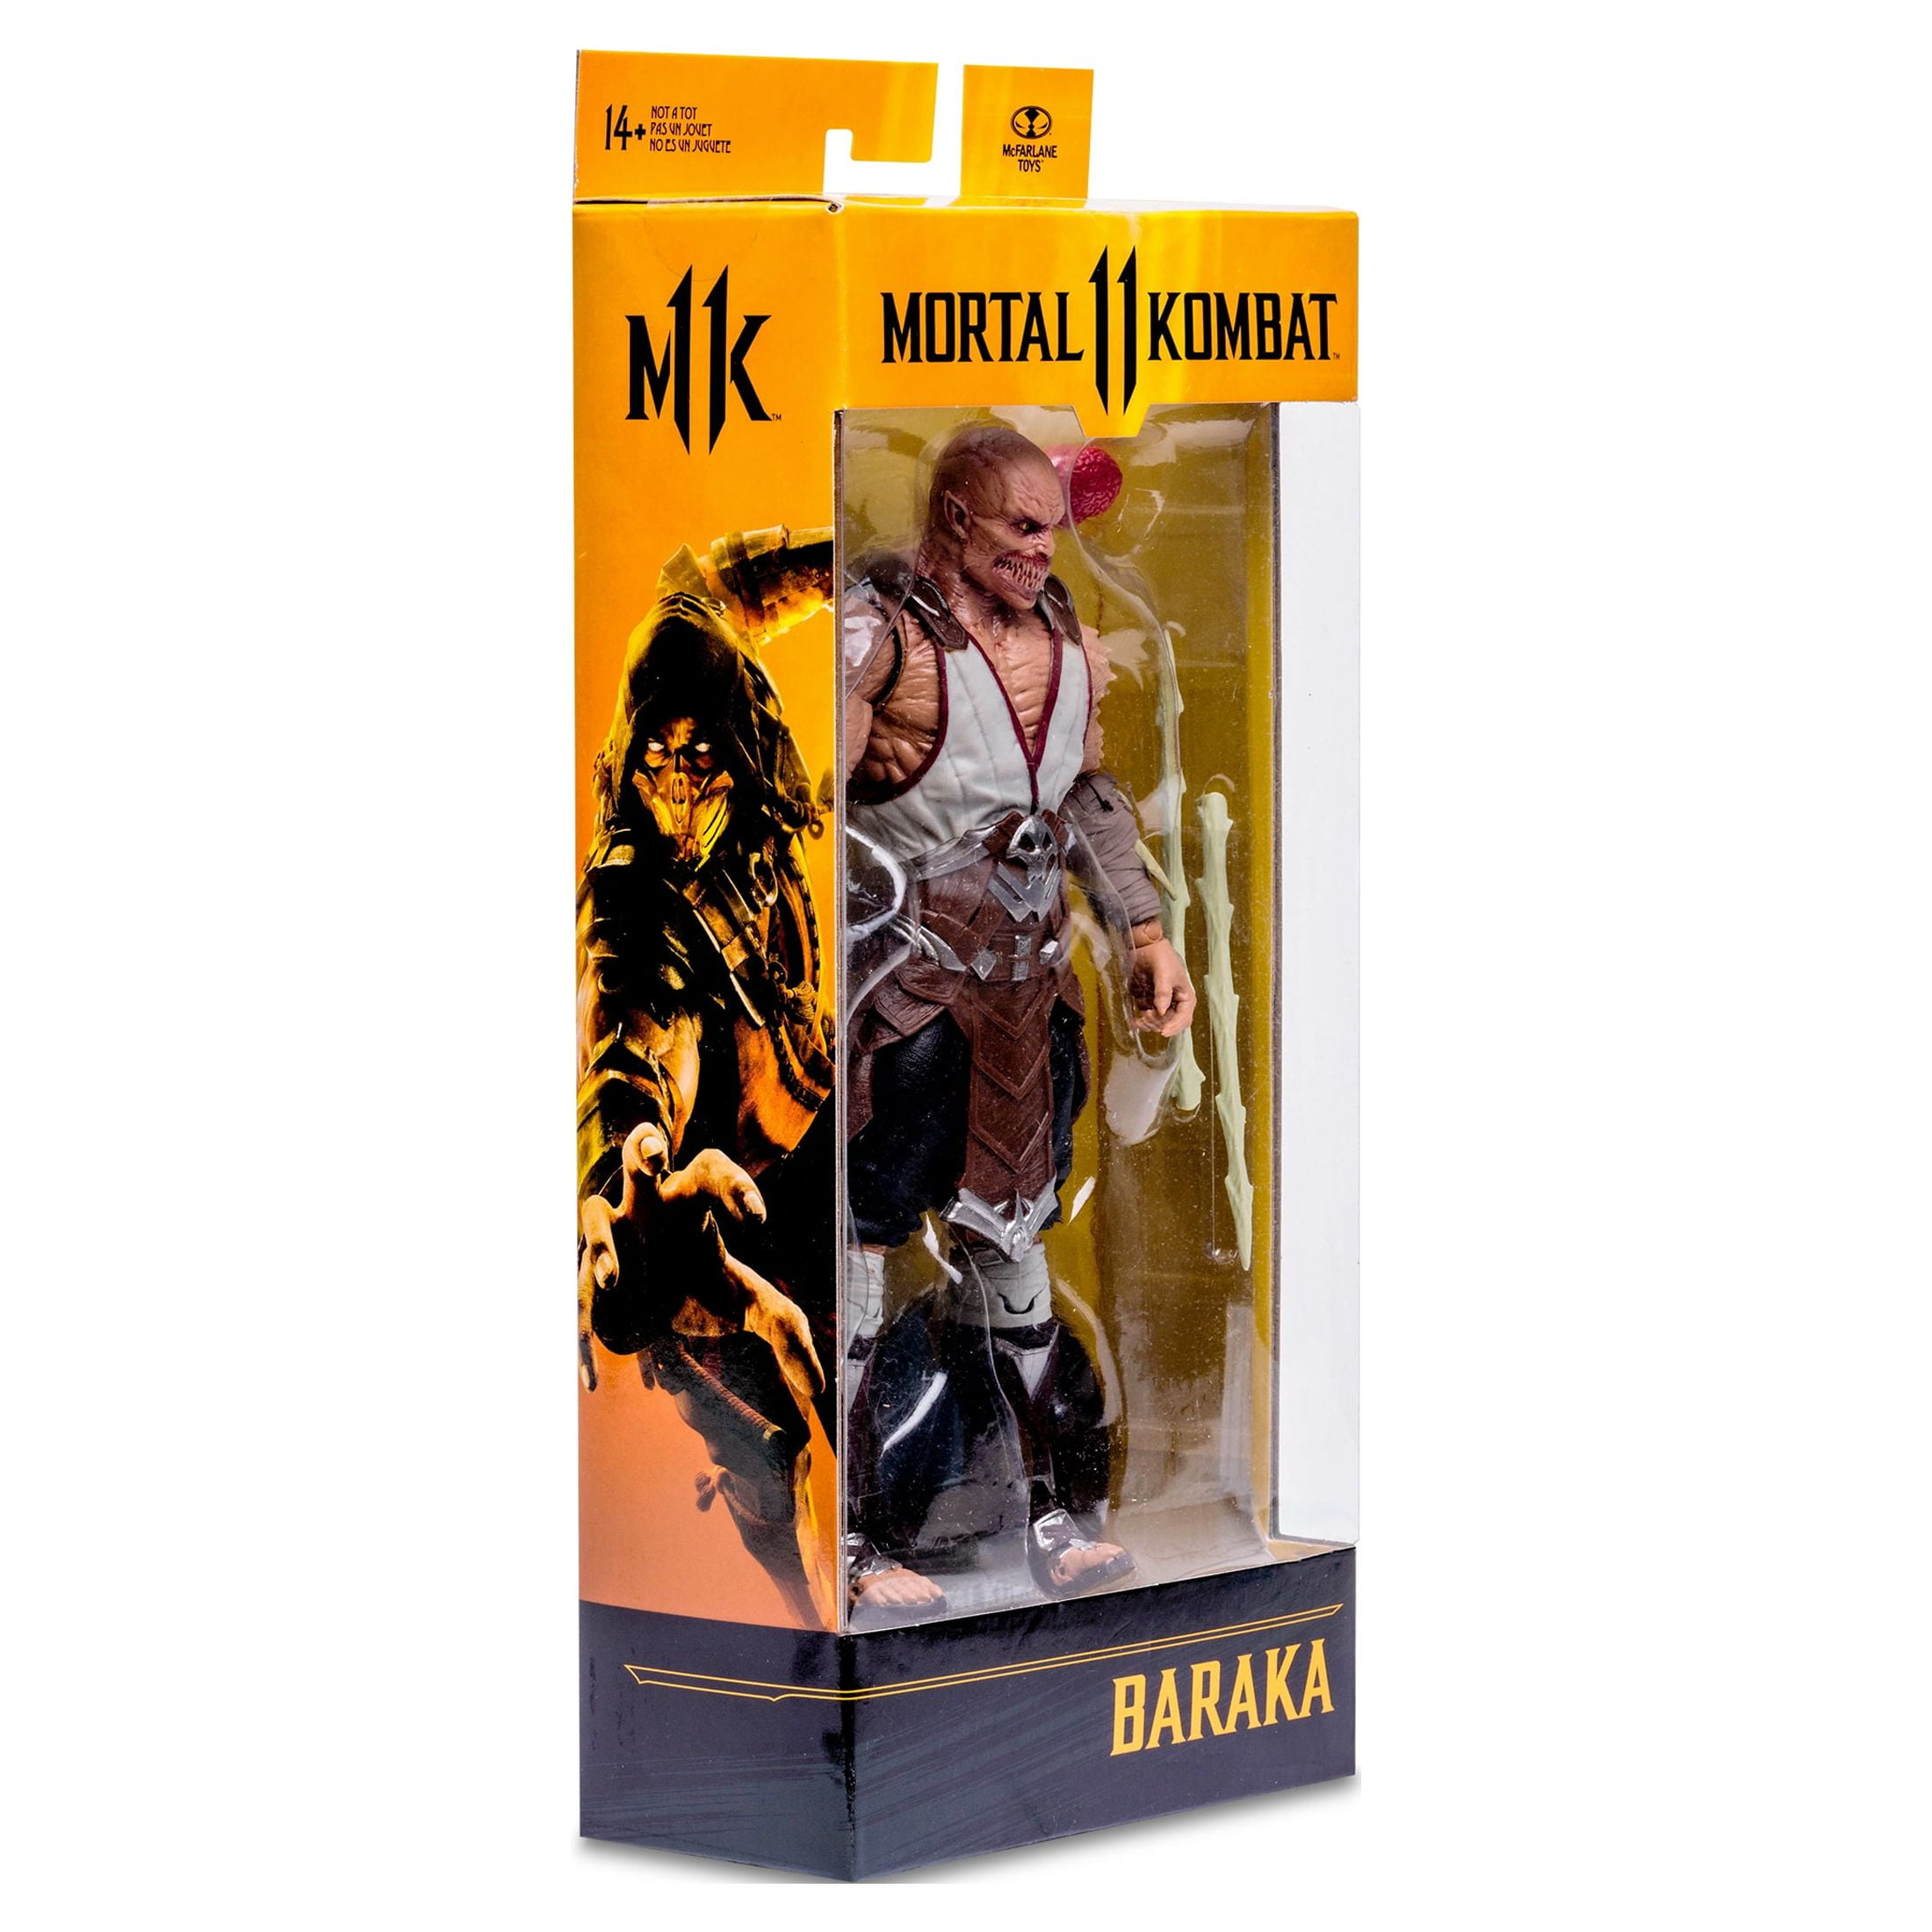 Mortal Kombat - Baraka Horkata - McFarlane Toys 7'' figure